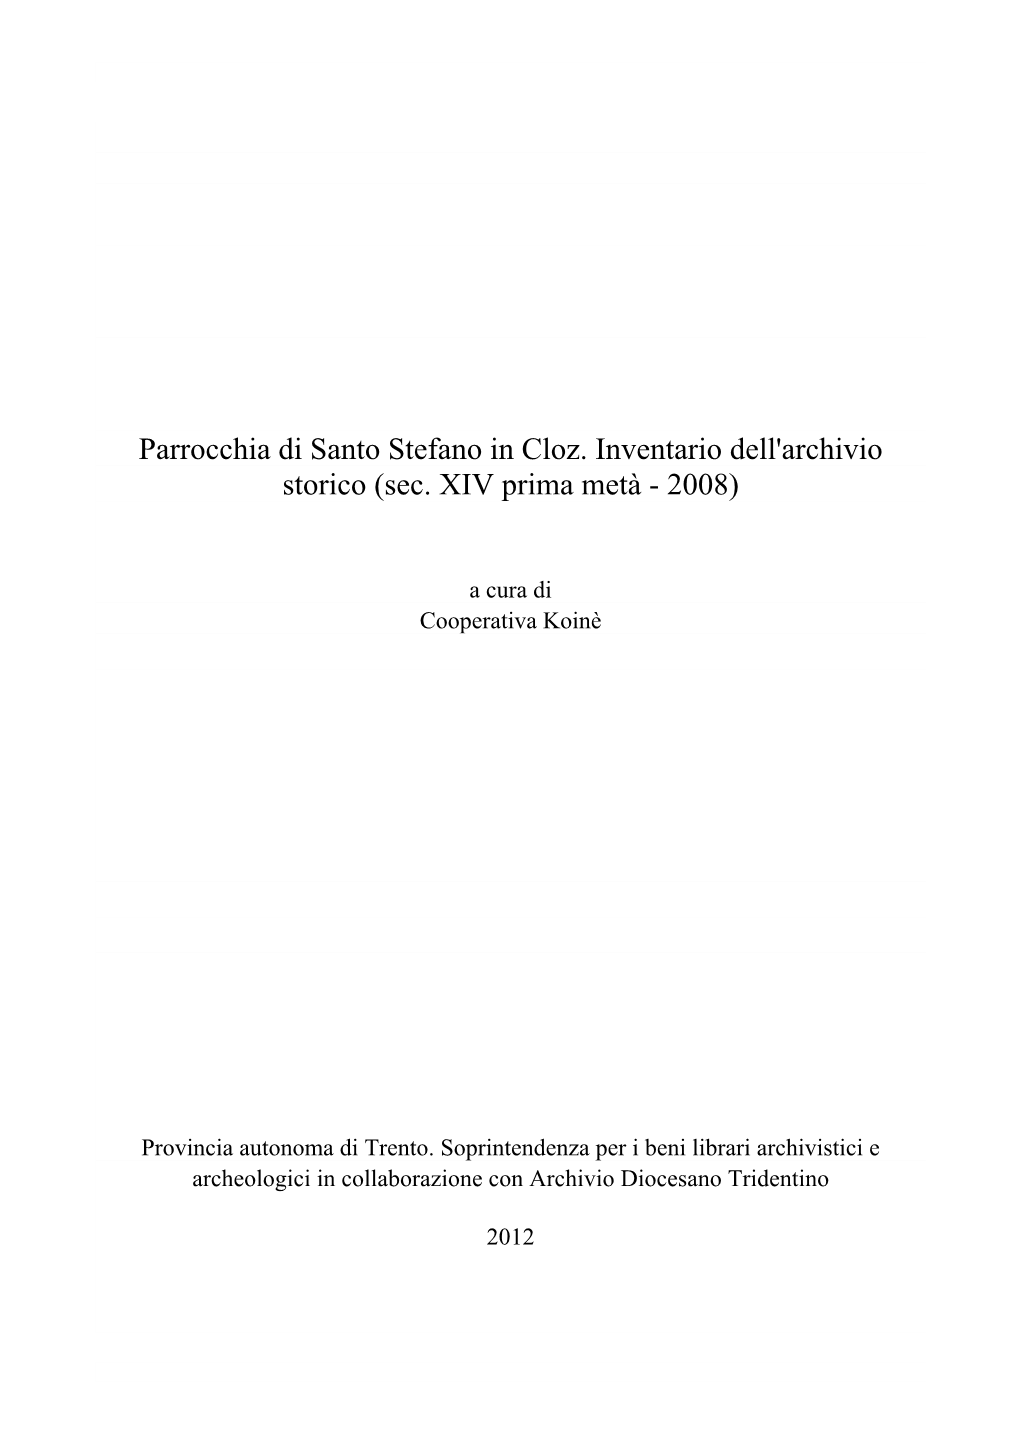 Parrocchia Di Santo Stefano in Cloz. Inventario Dell'archivio Storico (Sec